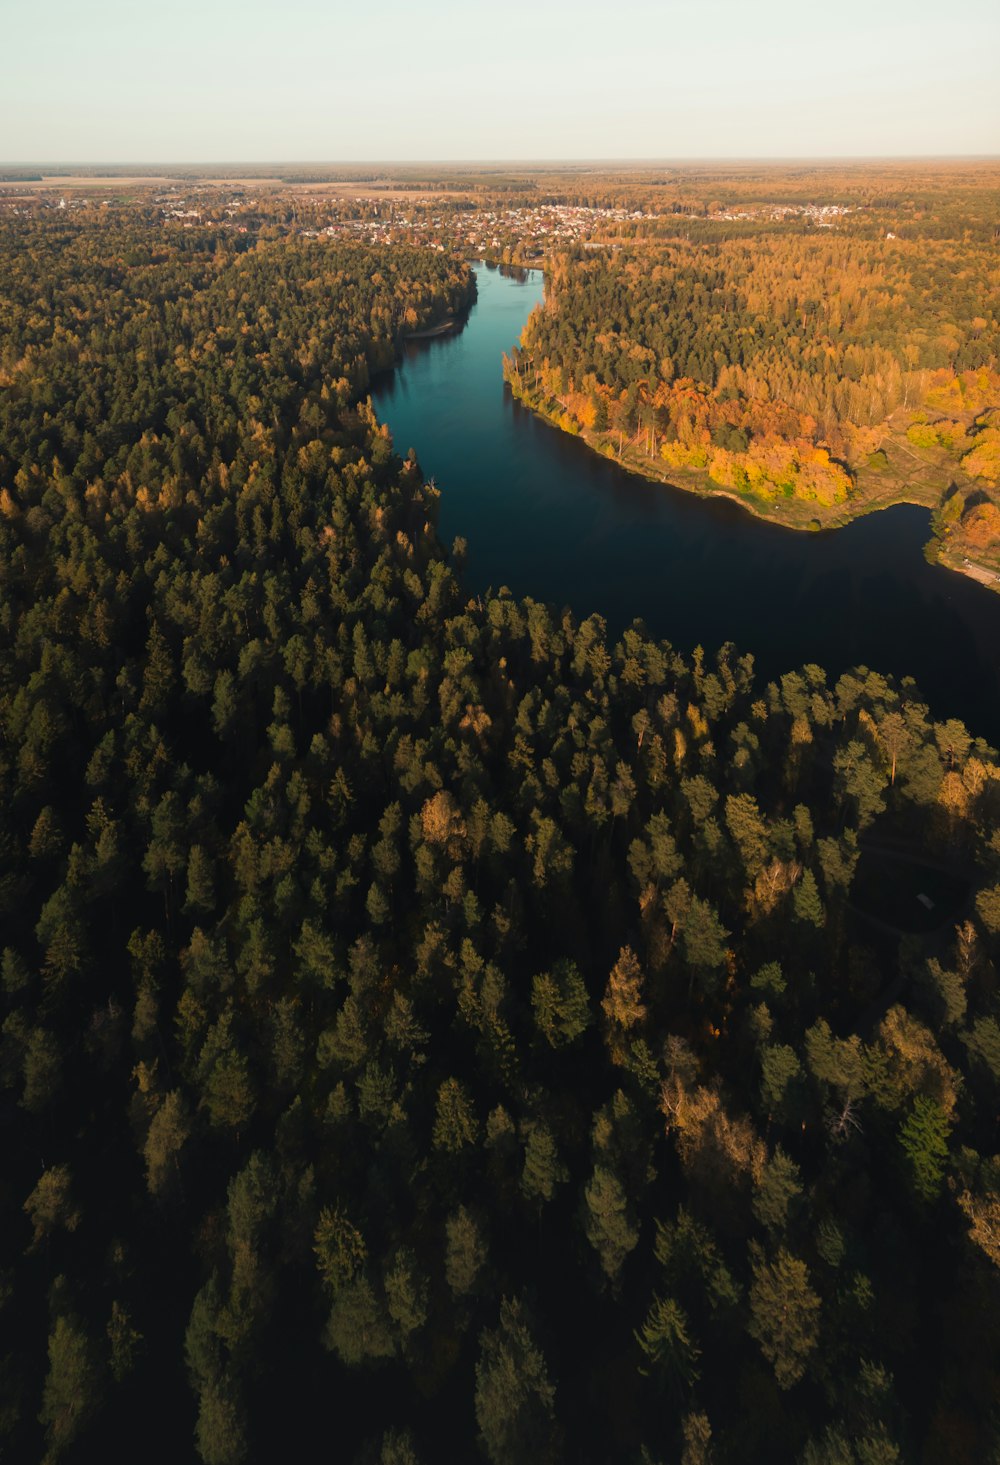 vista aérea do lago cercado por árvores durante o dia